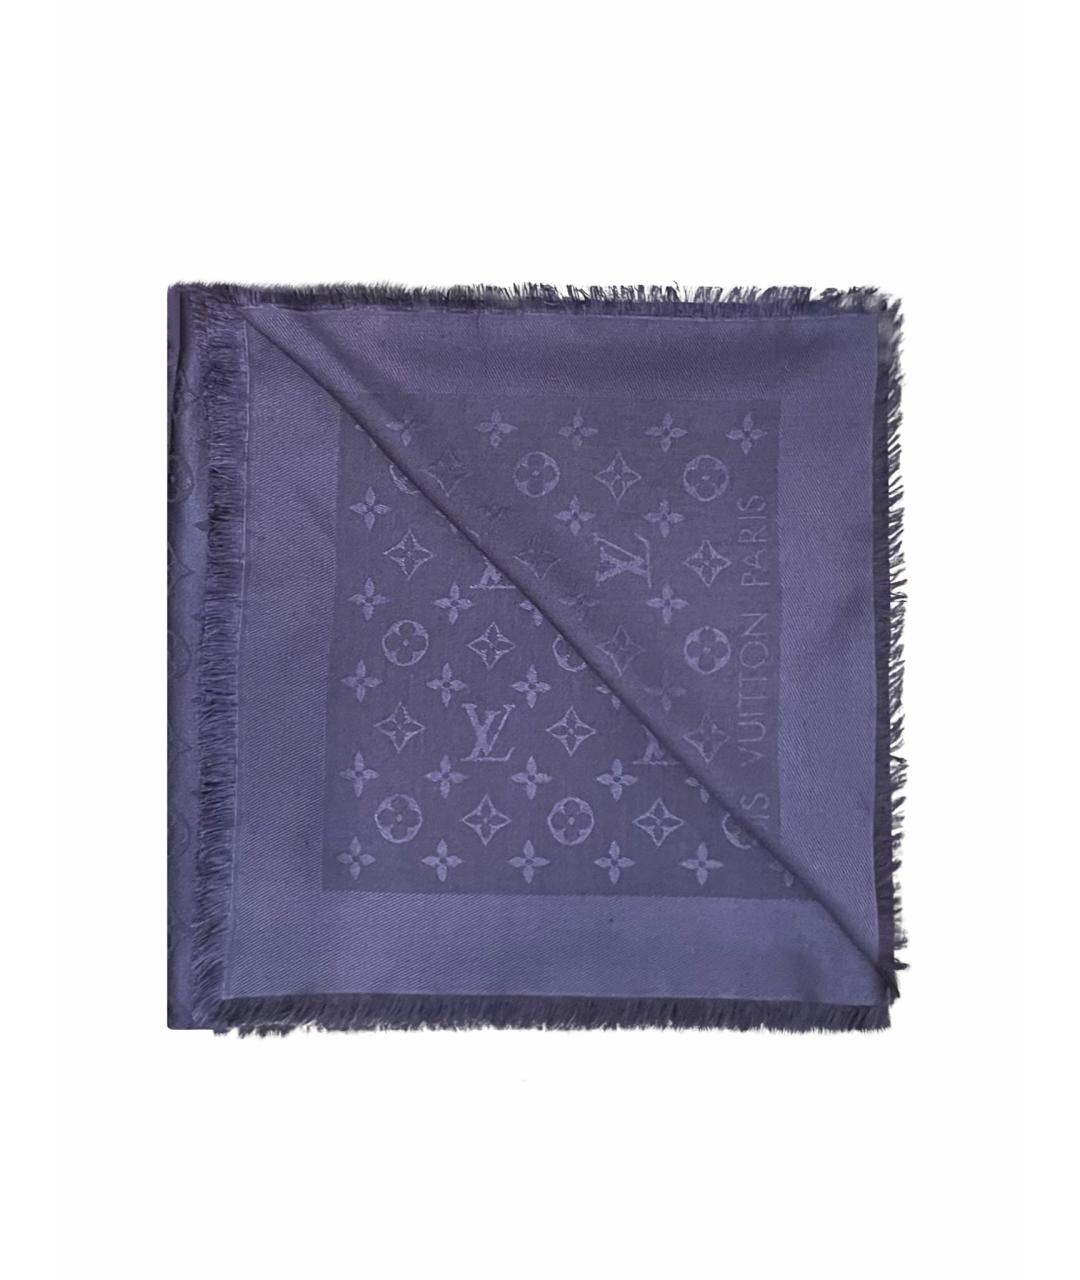 LOUIS VUITTON PRE-OWNED Темно-синий шерстяной платок, фото 1